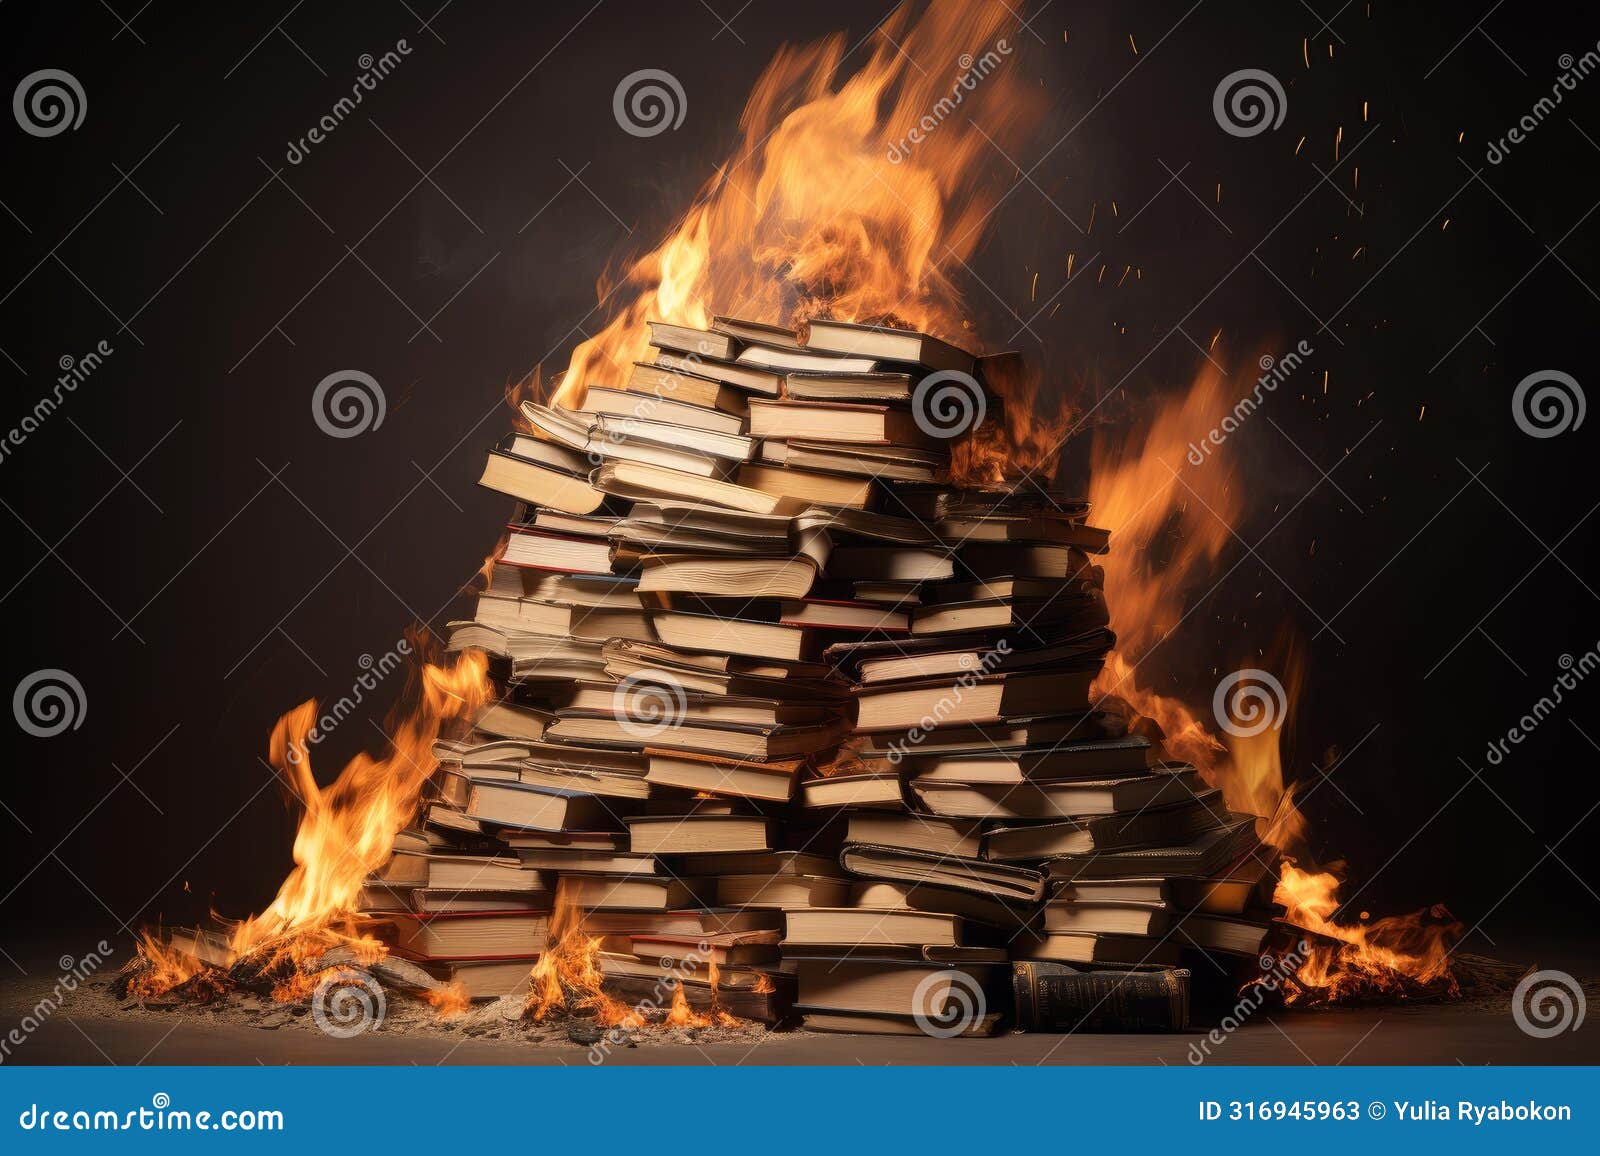 literary stack book fire magic. generate ai